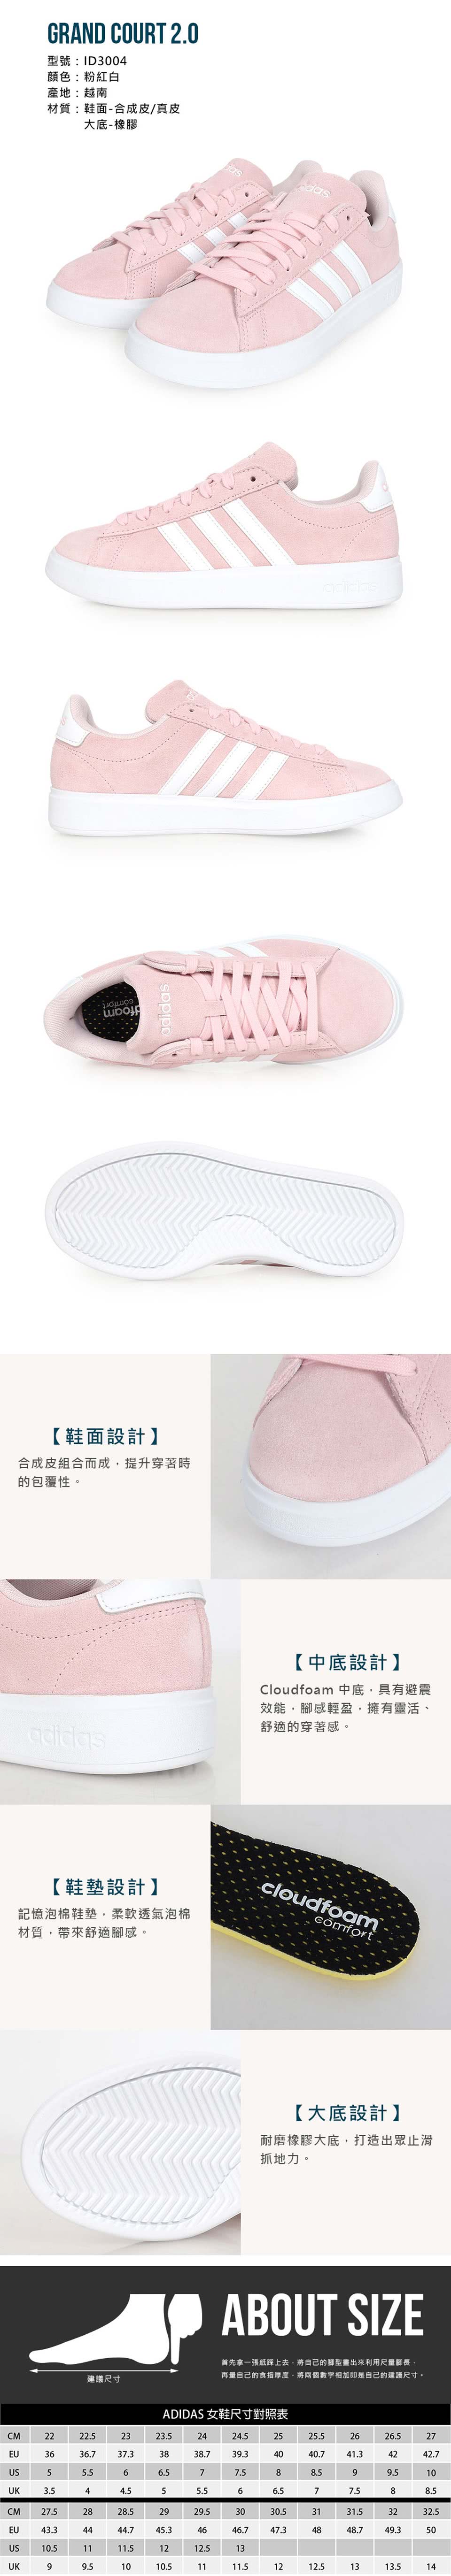 adidas 愛迪達 女運動休閒鞋-皮革 愛迪達 粉紅白(I